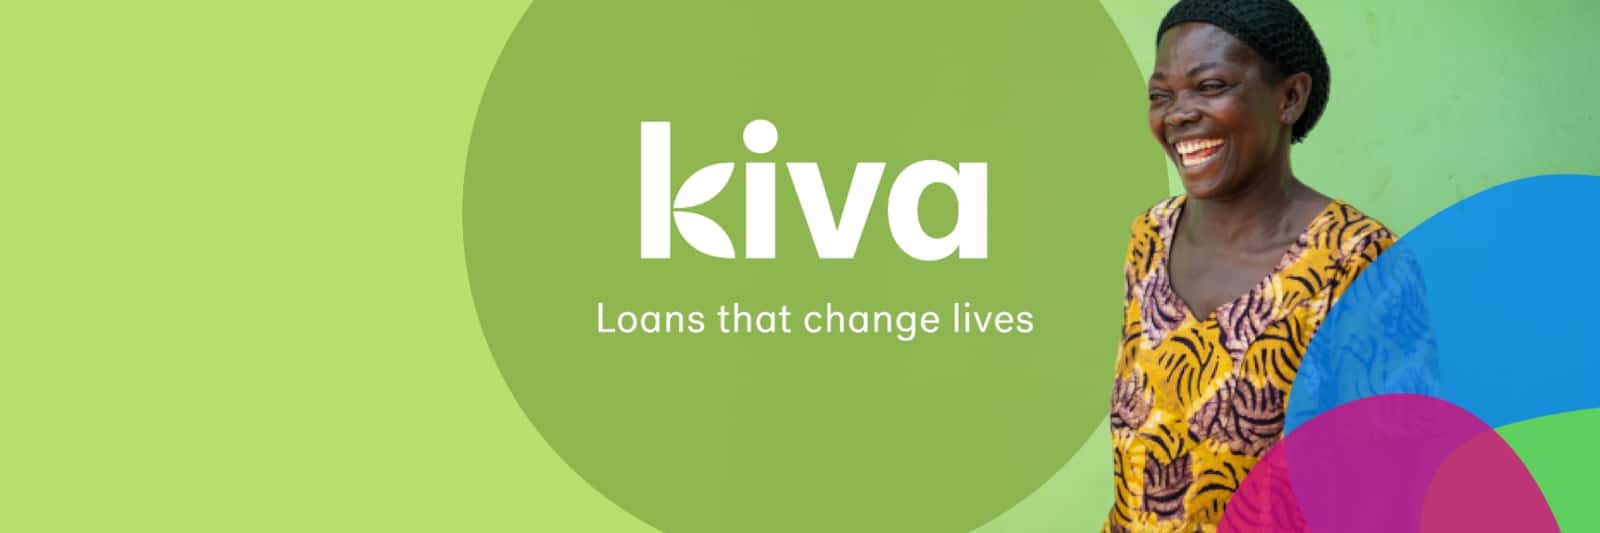 2sic unterstützt Kiva<br>für eine bessere Welt